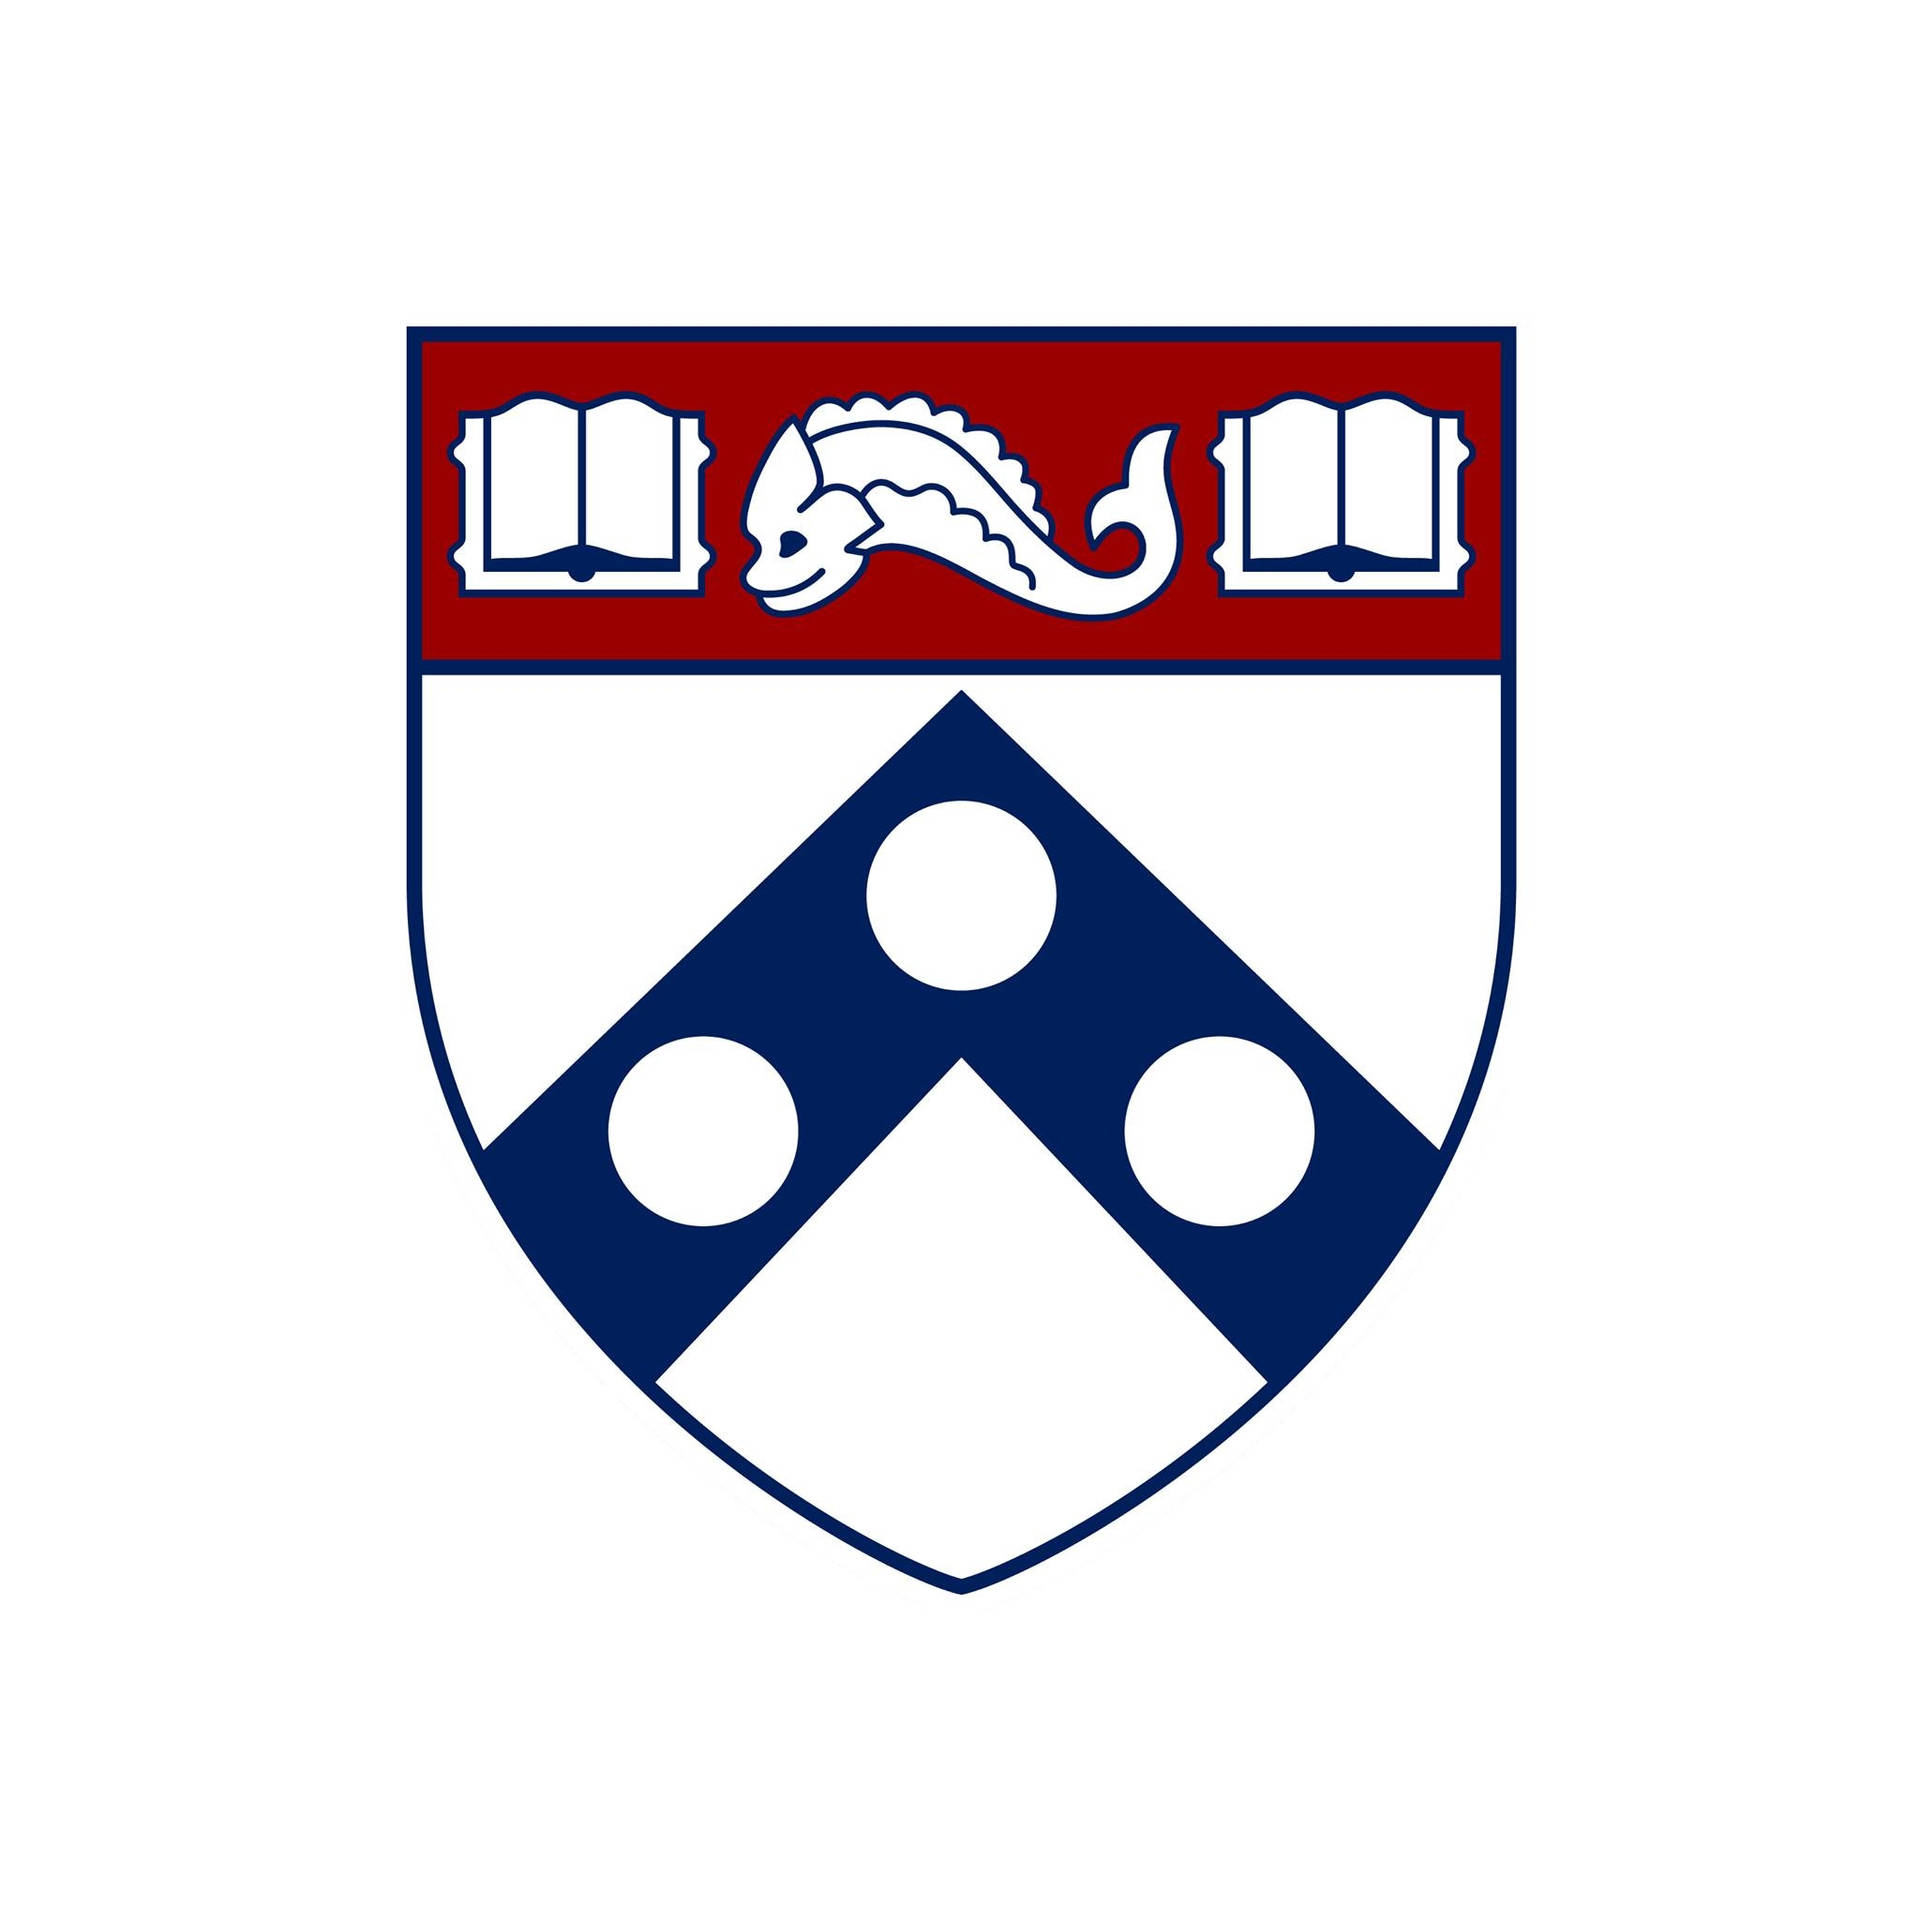 Universitätvon Pennsylvania Wappen-logo Wallpaper